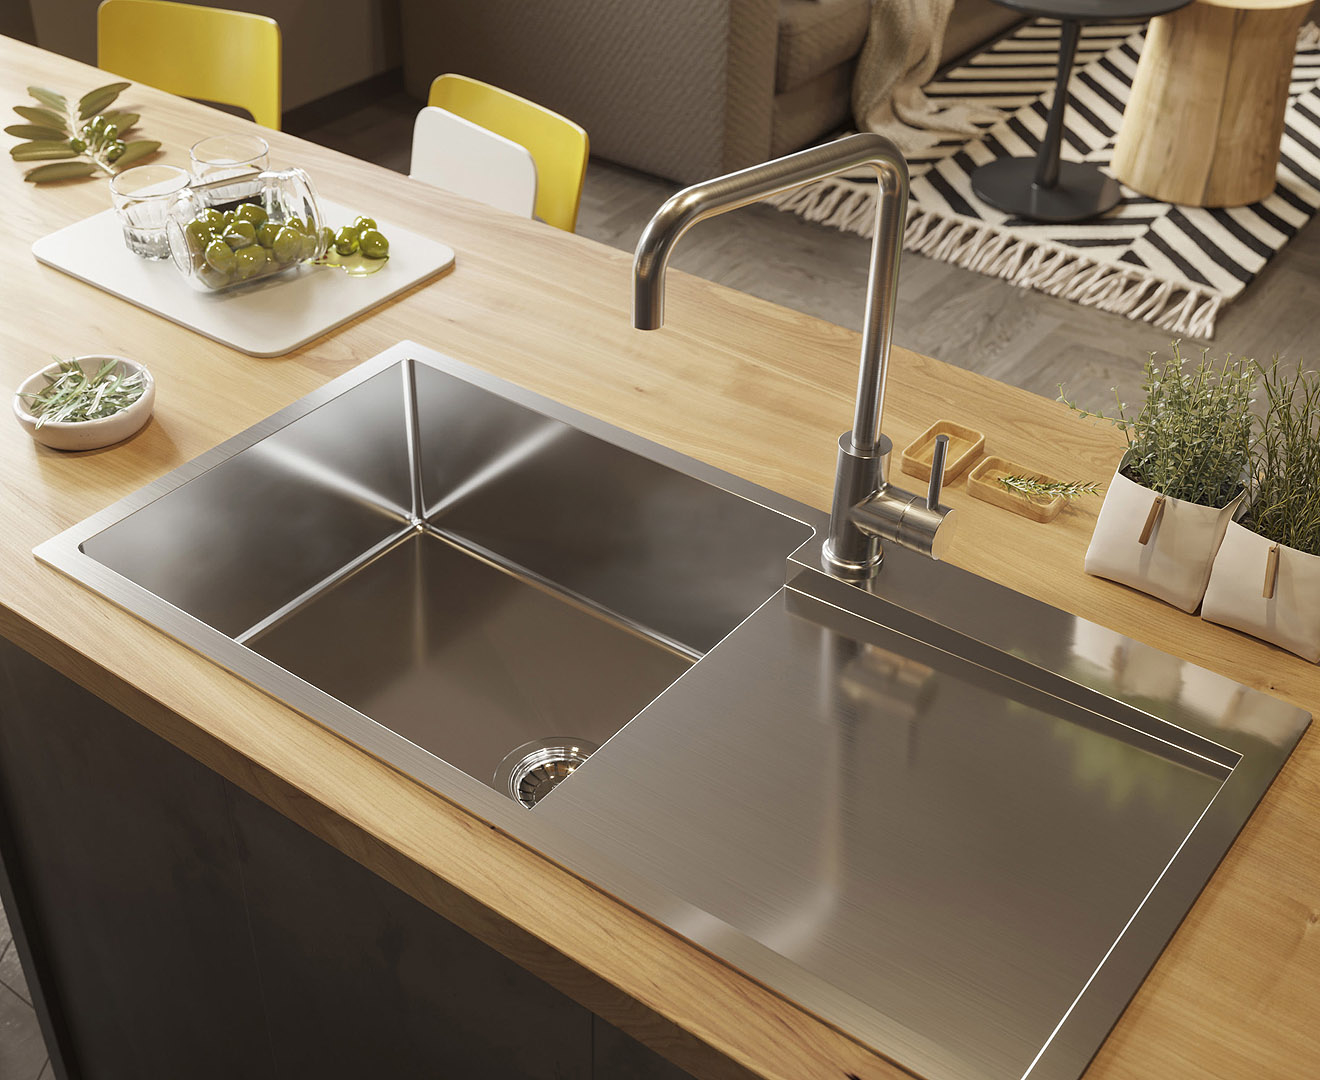 316 stainless steel kitchen sink